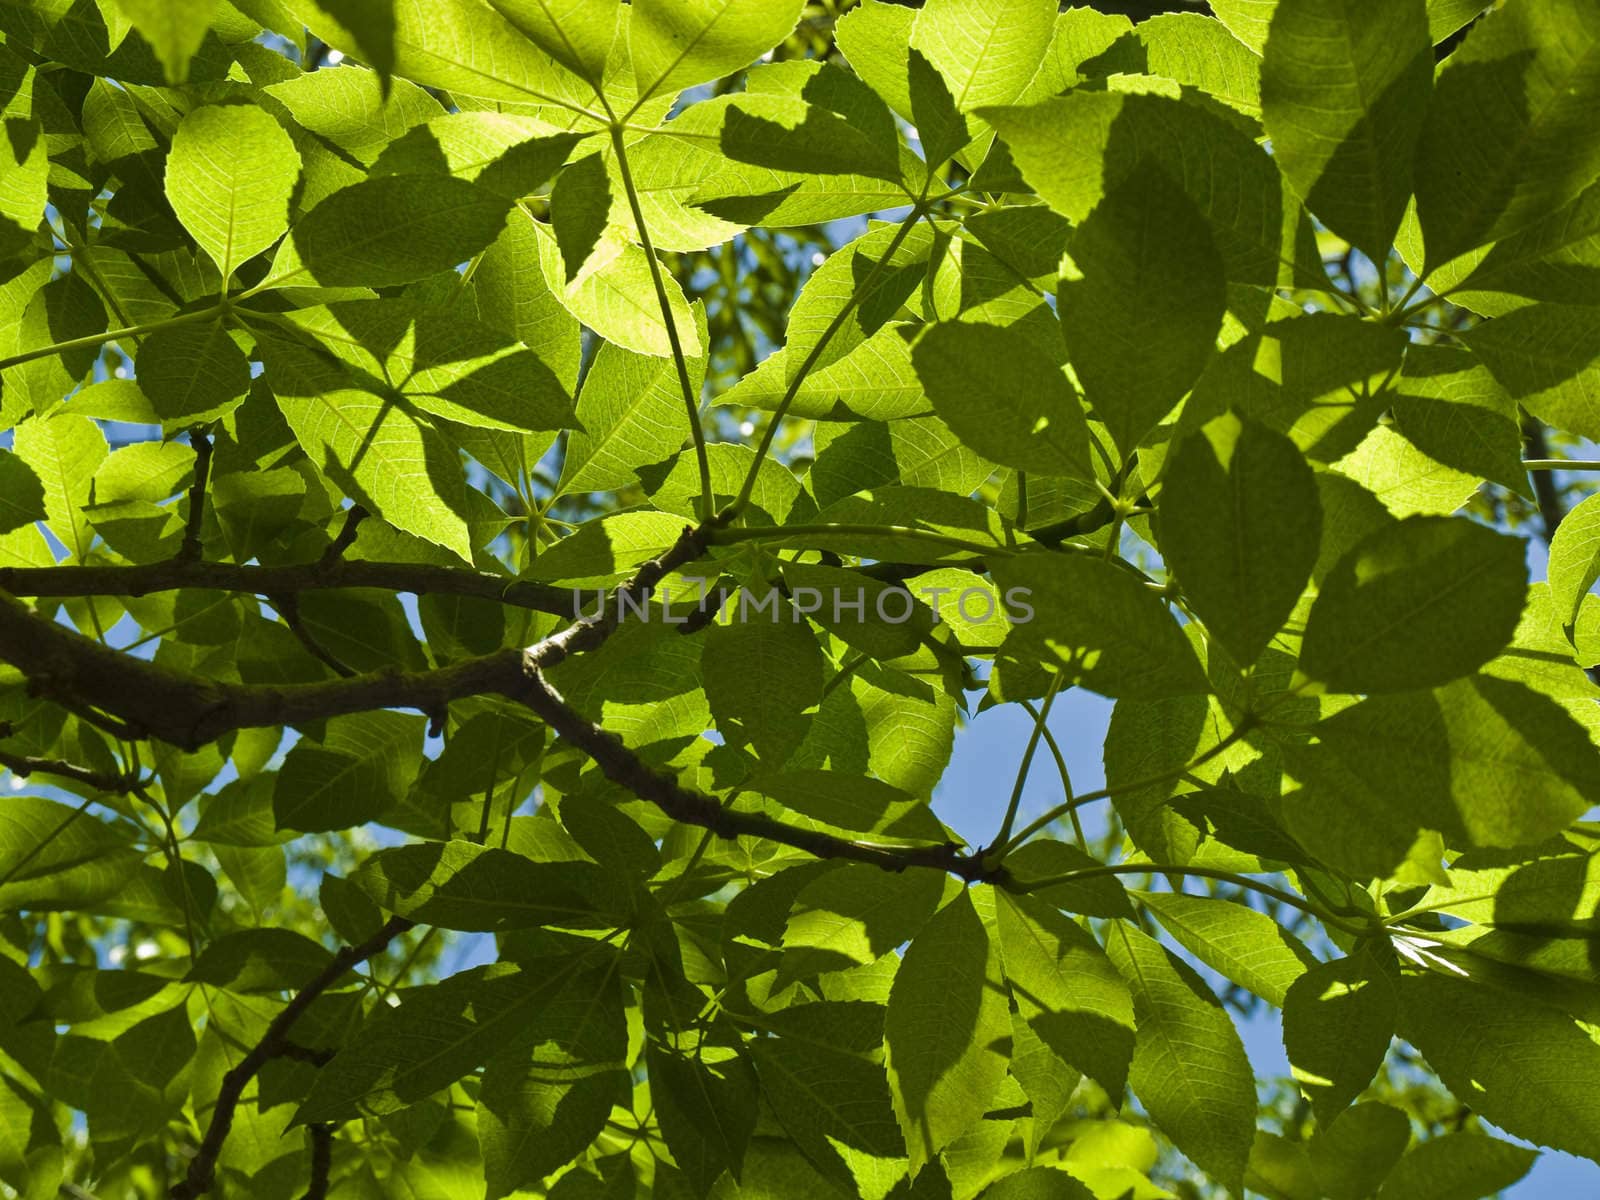 Foliage by PhotoWorks